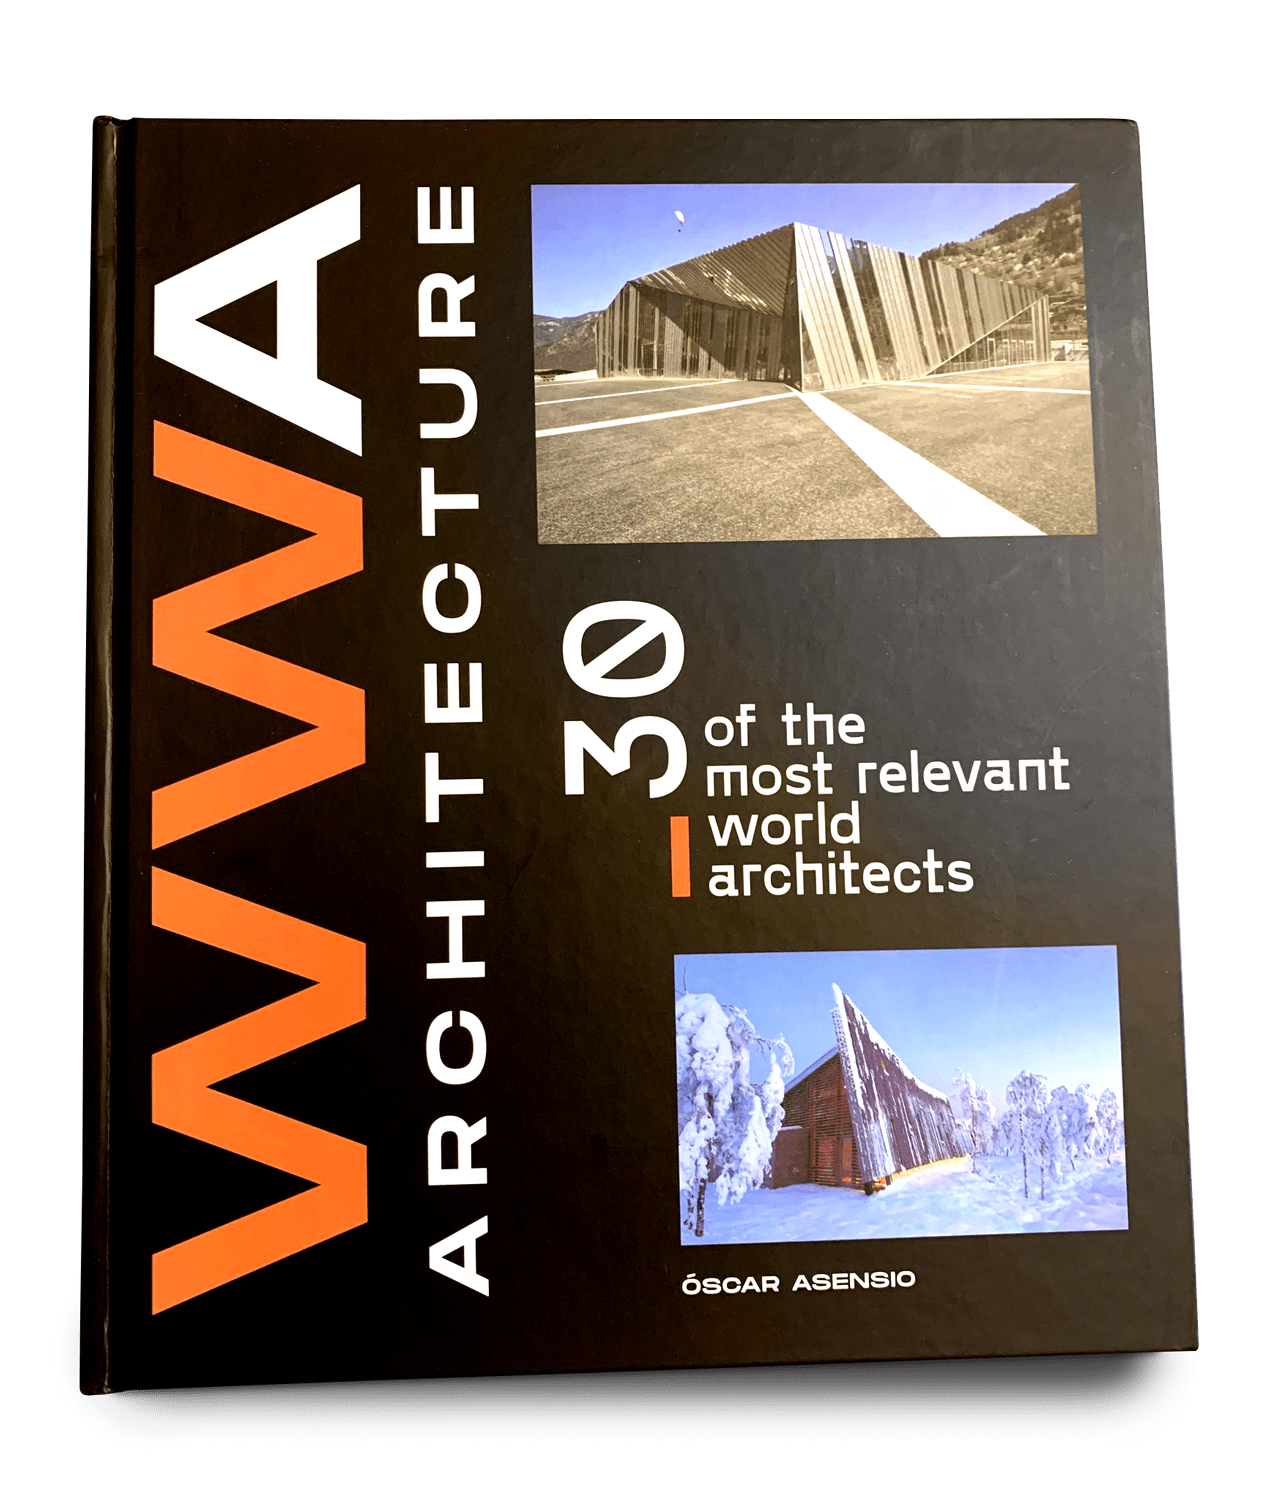 WWA Architecture